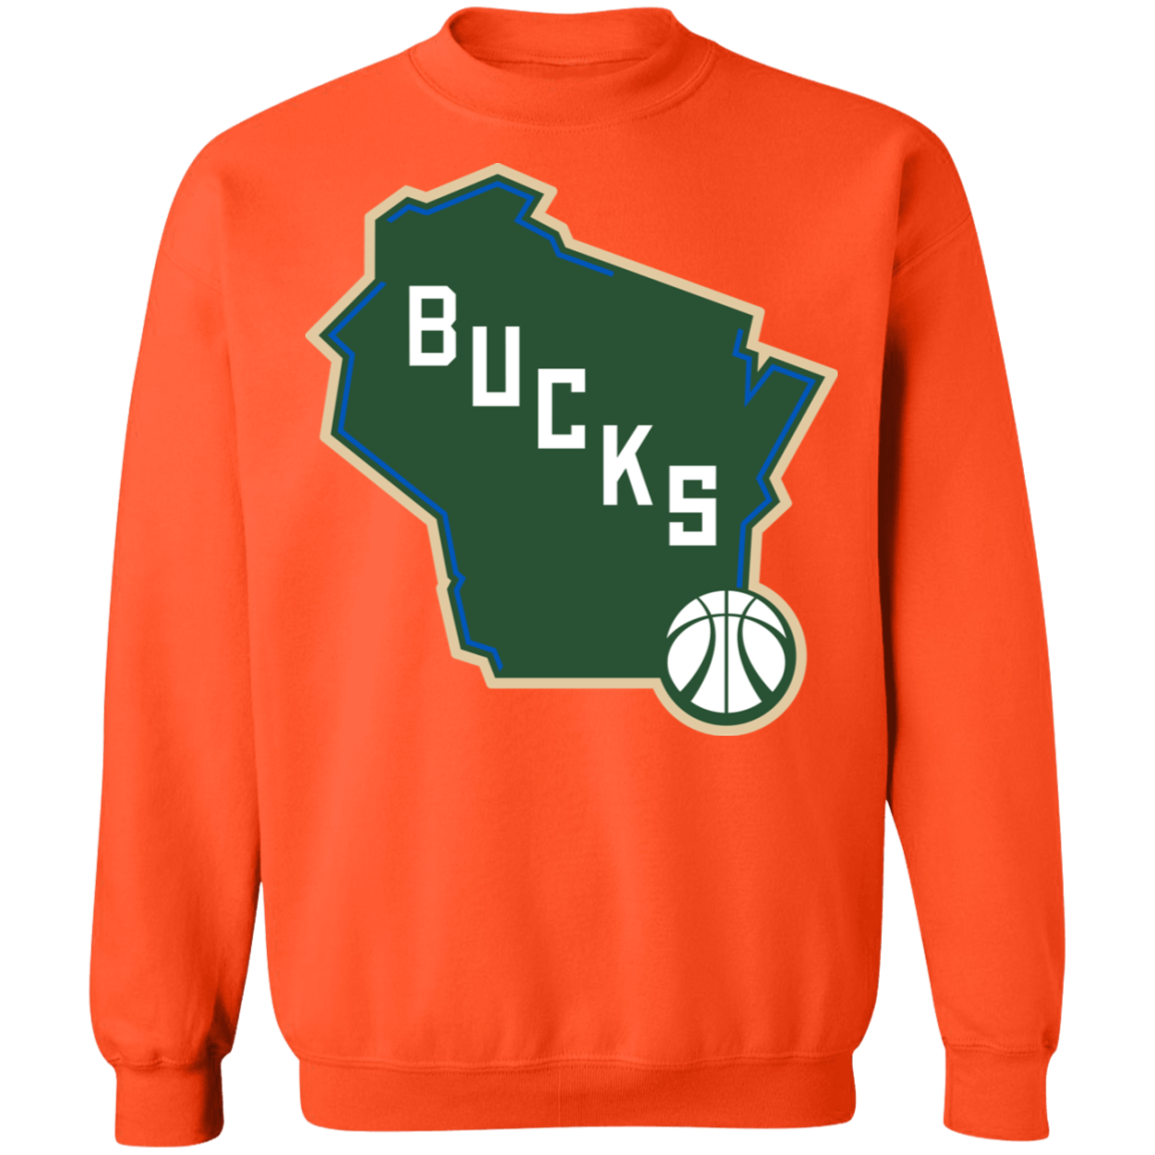 bucks crewneck sweatshirt